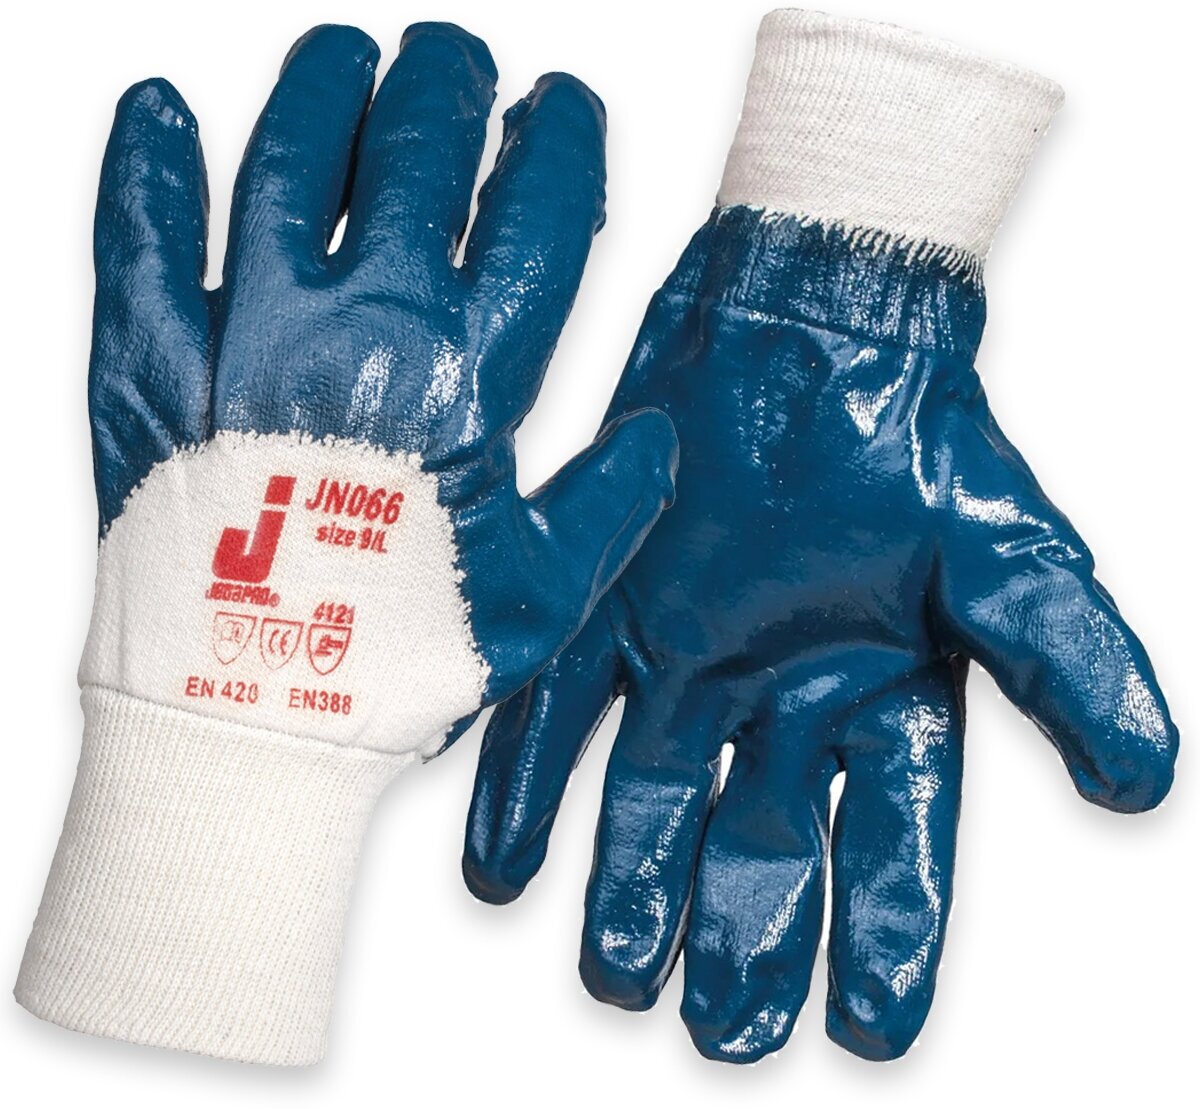 Масло-бензостойкие защитные перчатки Jeta Safety JN066, размер XL, 1 пара